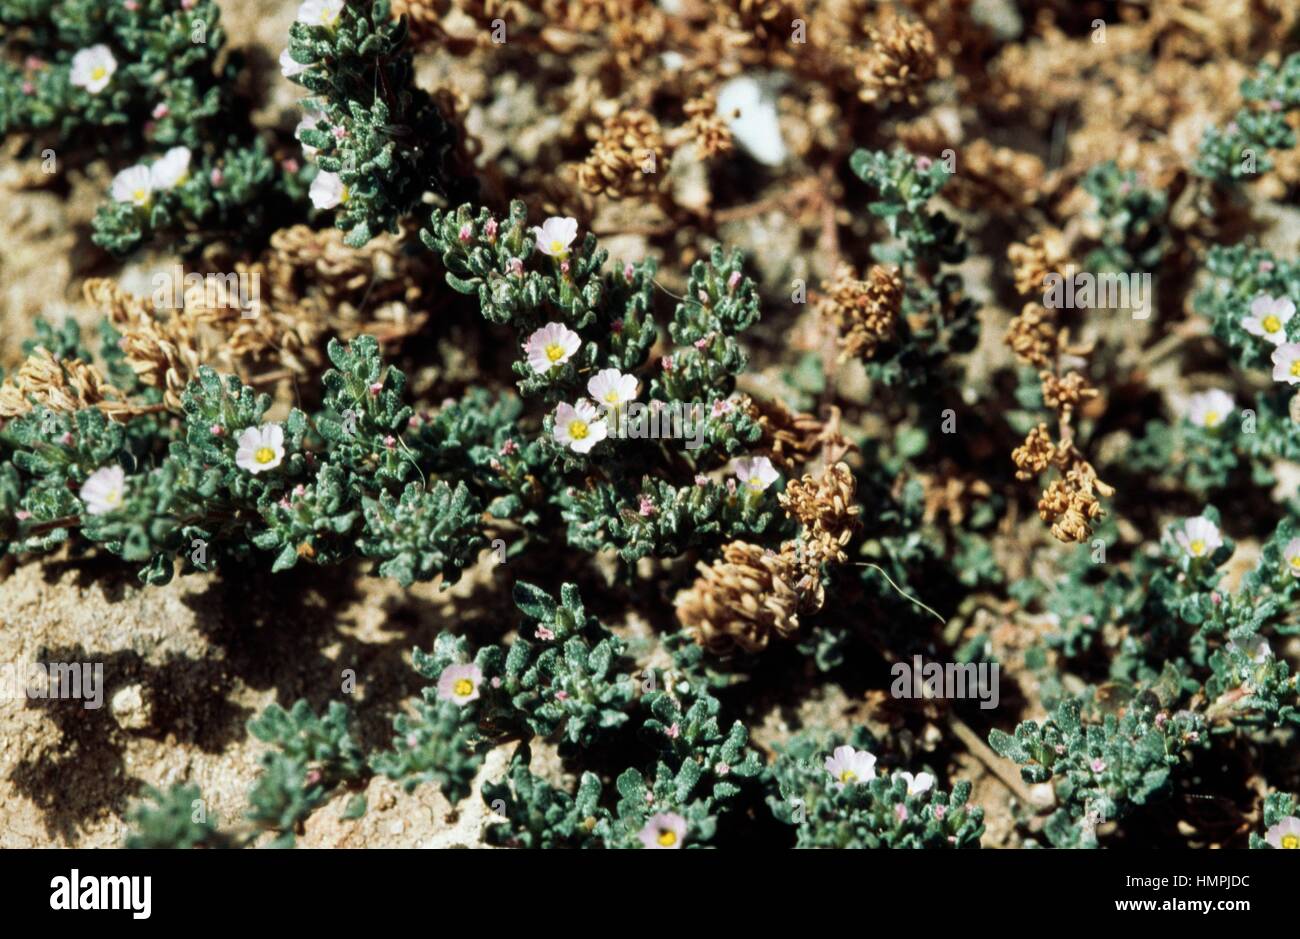 Annual sea heath (Frankenia pulverulenta), Frankeniaceae. Stock Photo